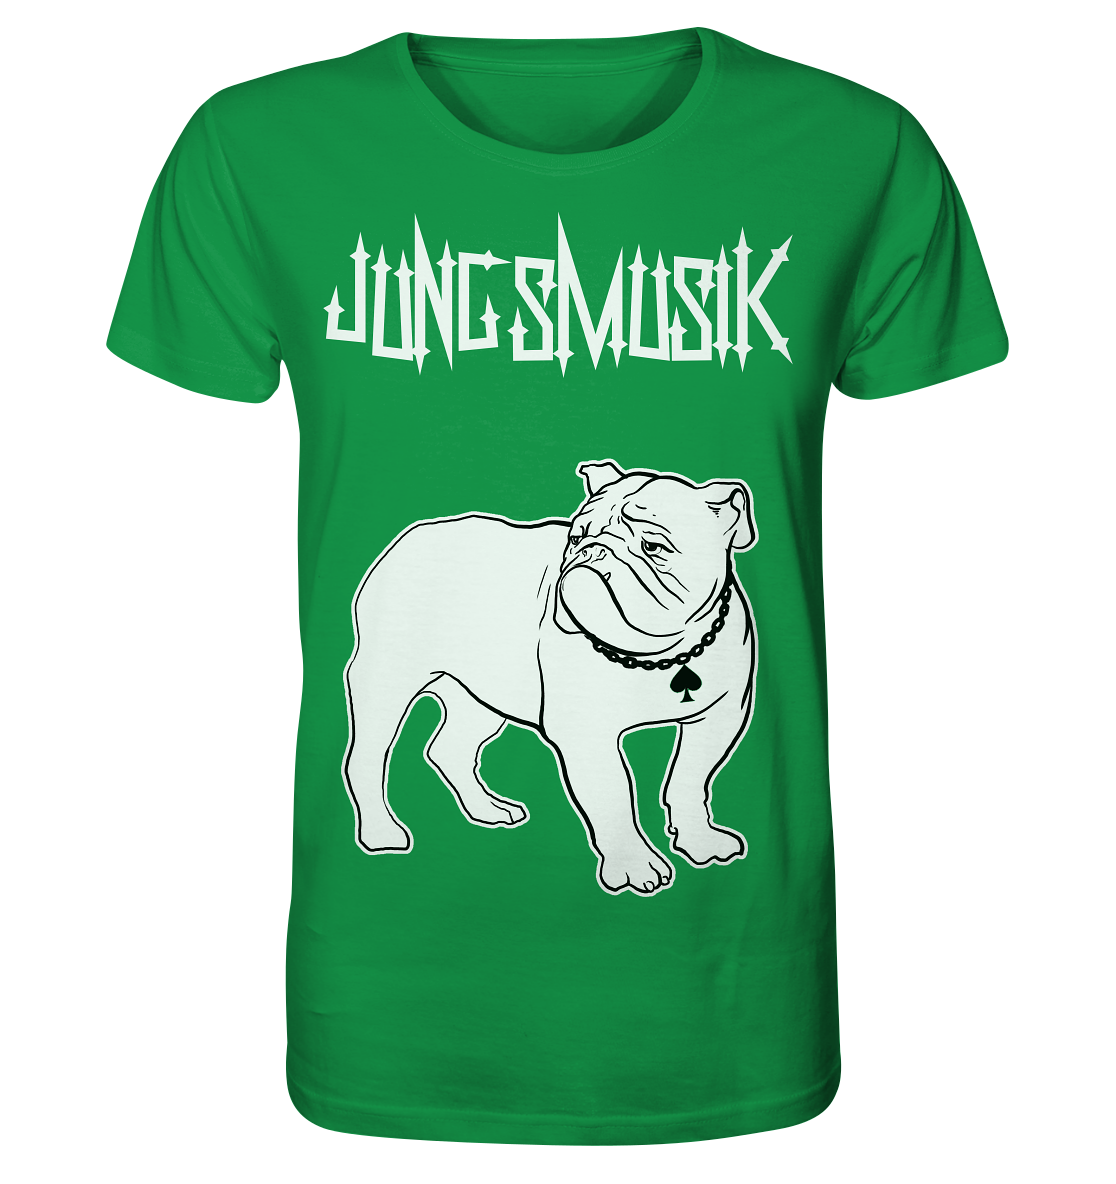 A Micha-El Goehre: Jungsmusik - T-Shirt mit Bulldogge Lemmy - Bio-Shirt von Artbookings/Shirtigo, mit einem künstlerischen Bild einer Bulldogge